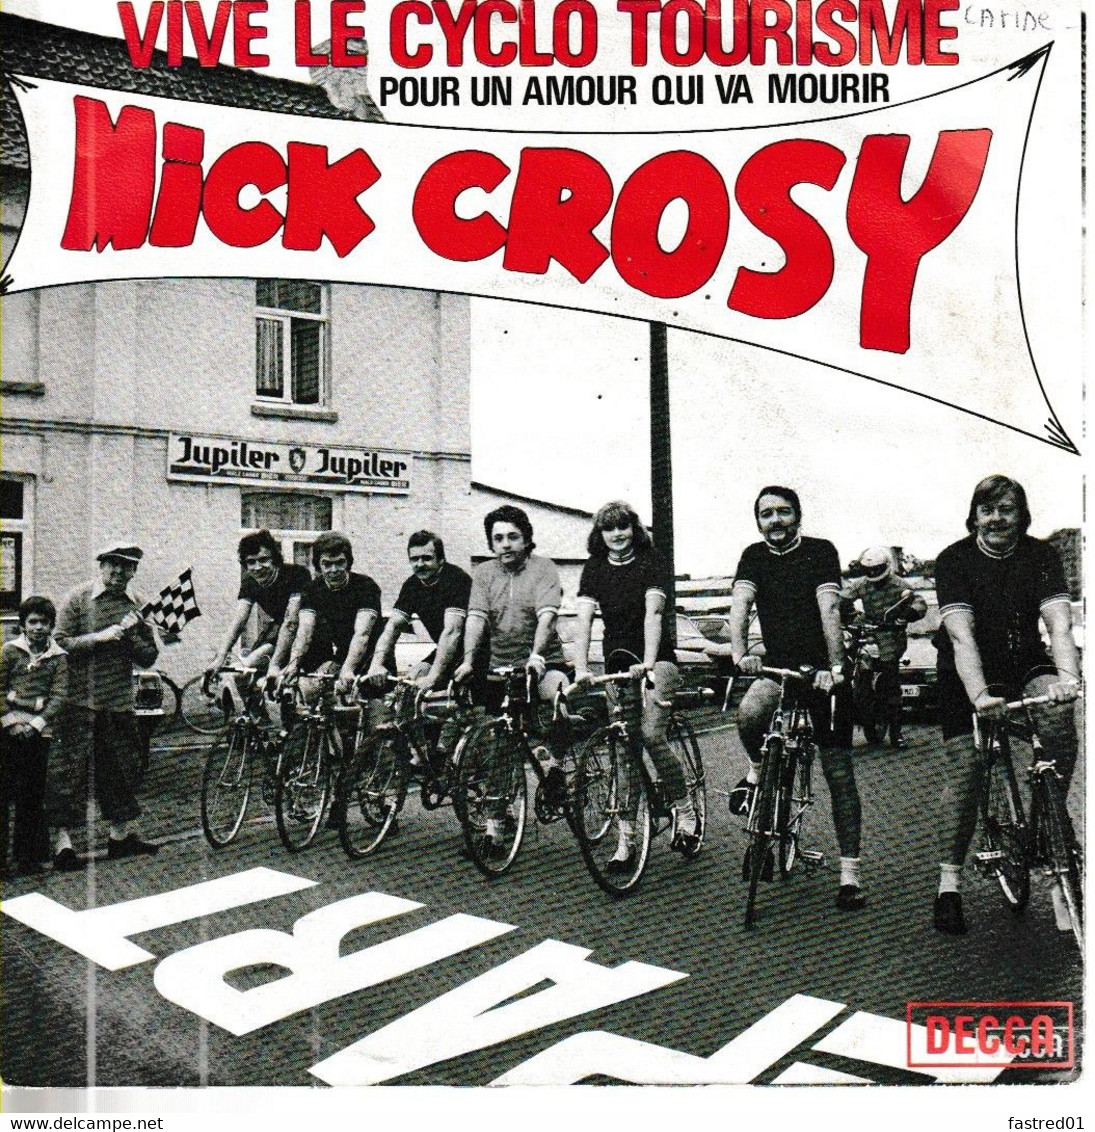 Vinyle SP 45t  7". MICK CROSY.  Vive Le Cyclo Tourisme / Pour Un Amour Qui Va Mourir. Date:1977.  N°18.183. état: EXC - Humor, Cabaret